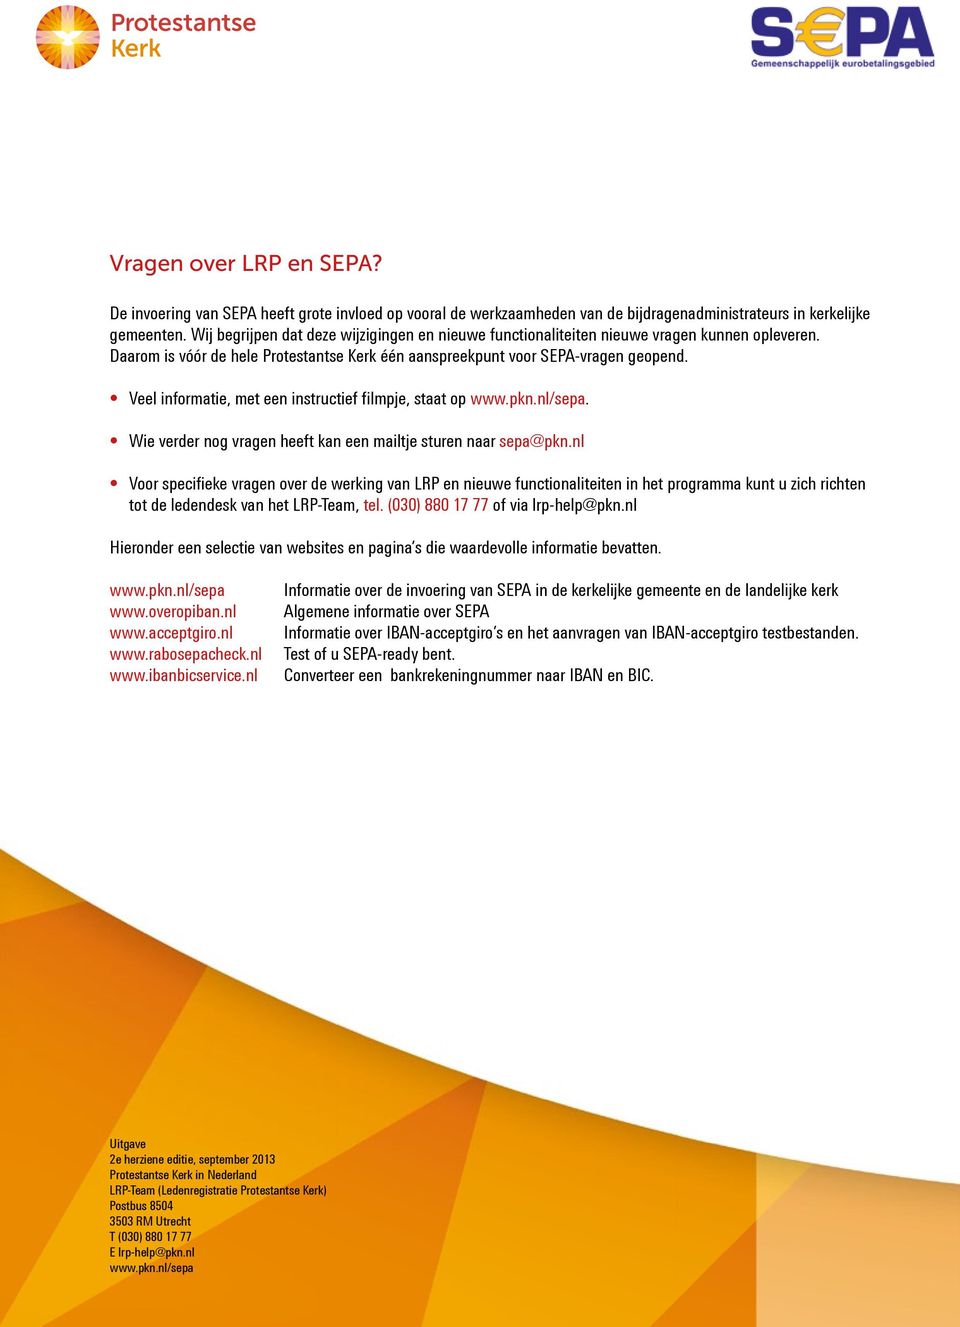 Veel informatie, met een instructief filmpje, staat op www.pkn.nl/sepa. Wie verder nog vragen heeft kan een mailtje sturen naar sepa@pkn.